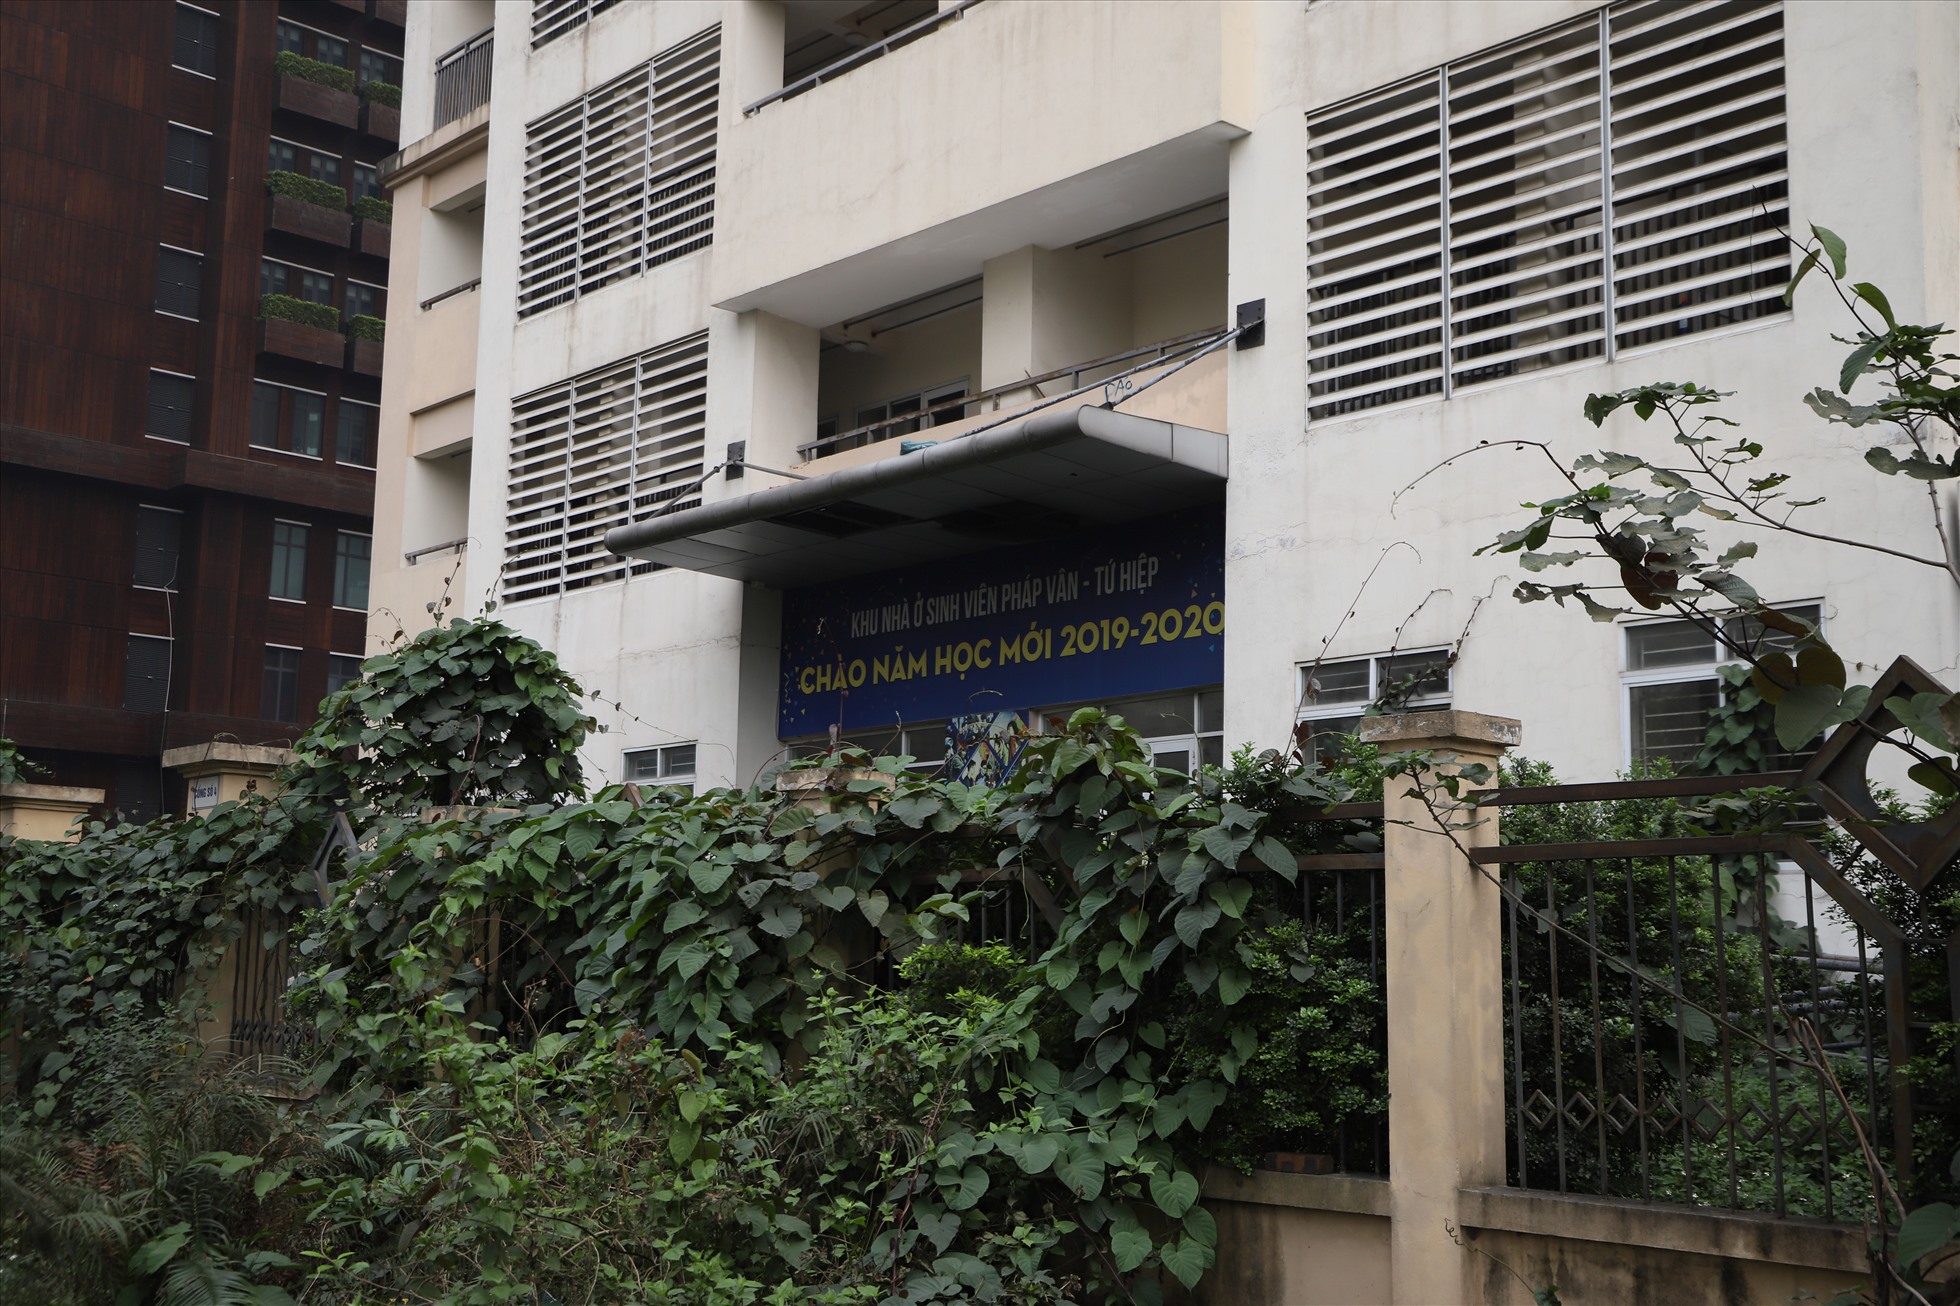 Lần gần nhất tòa nhà A1 đón sinh viên tới thuê là khóa học 2019-2020. Ảnh: Vĩnh Hoàng